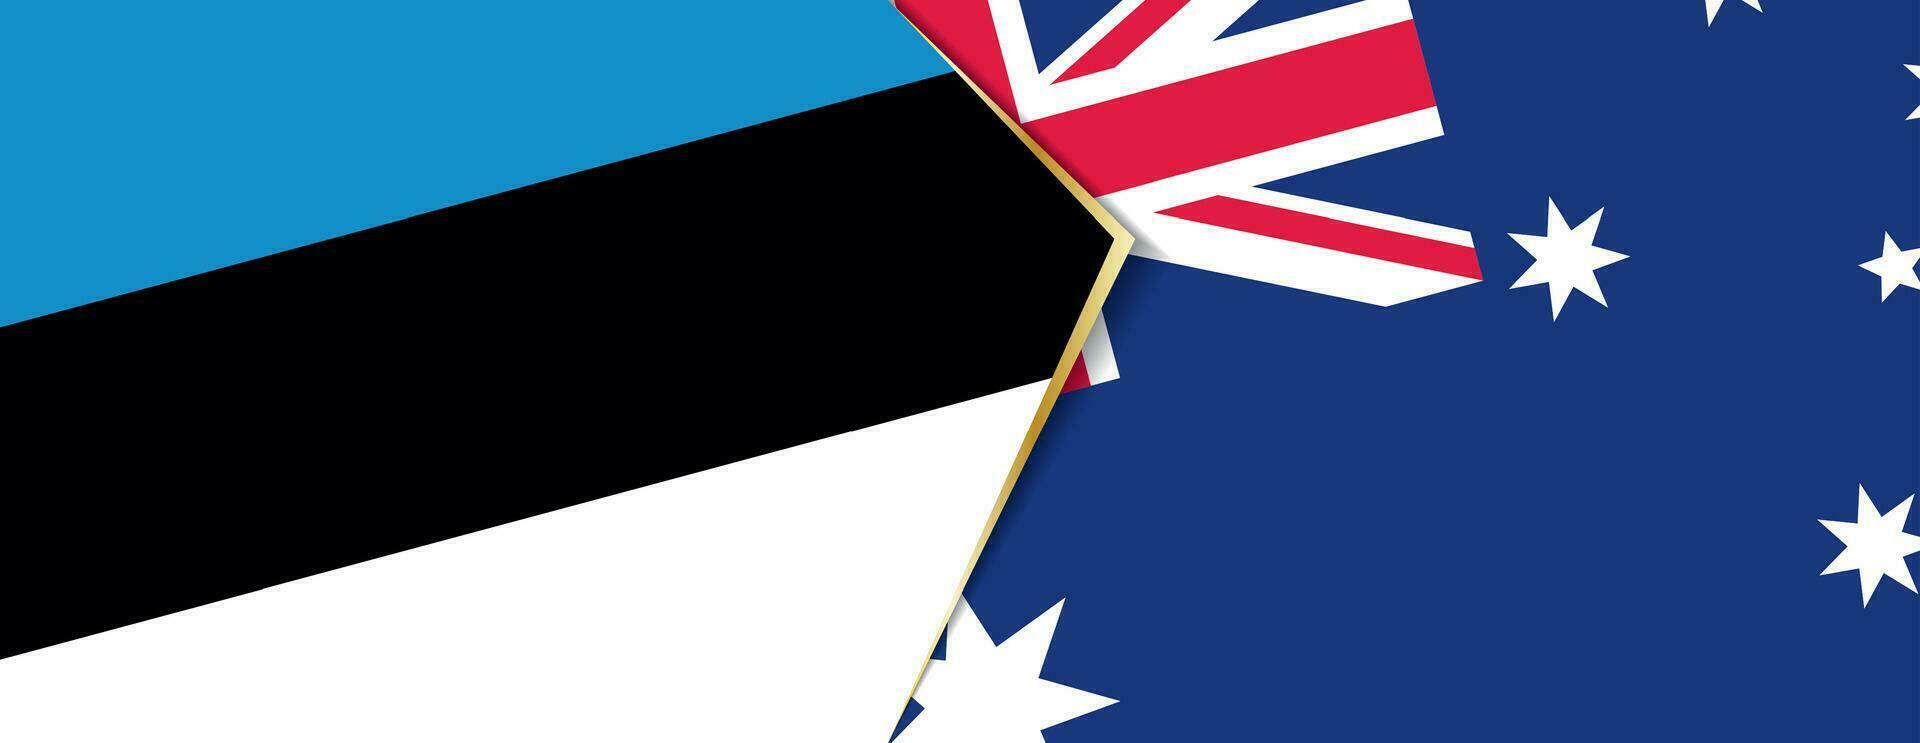 estland och Australien flaggor, två vektor flaggor.